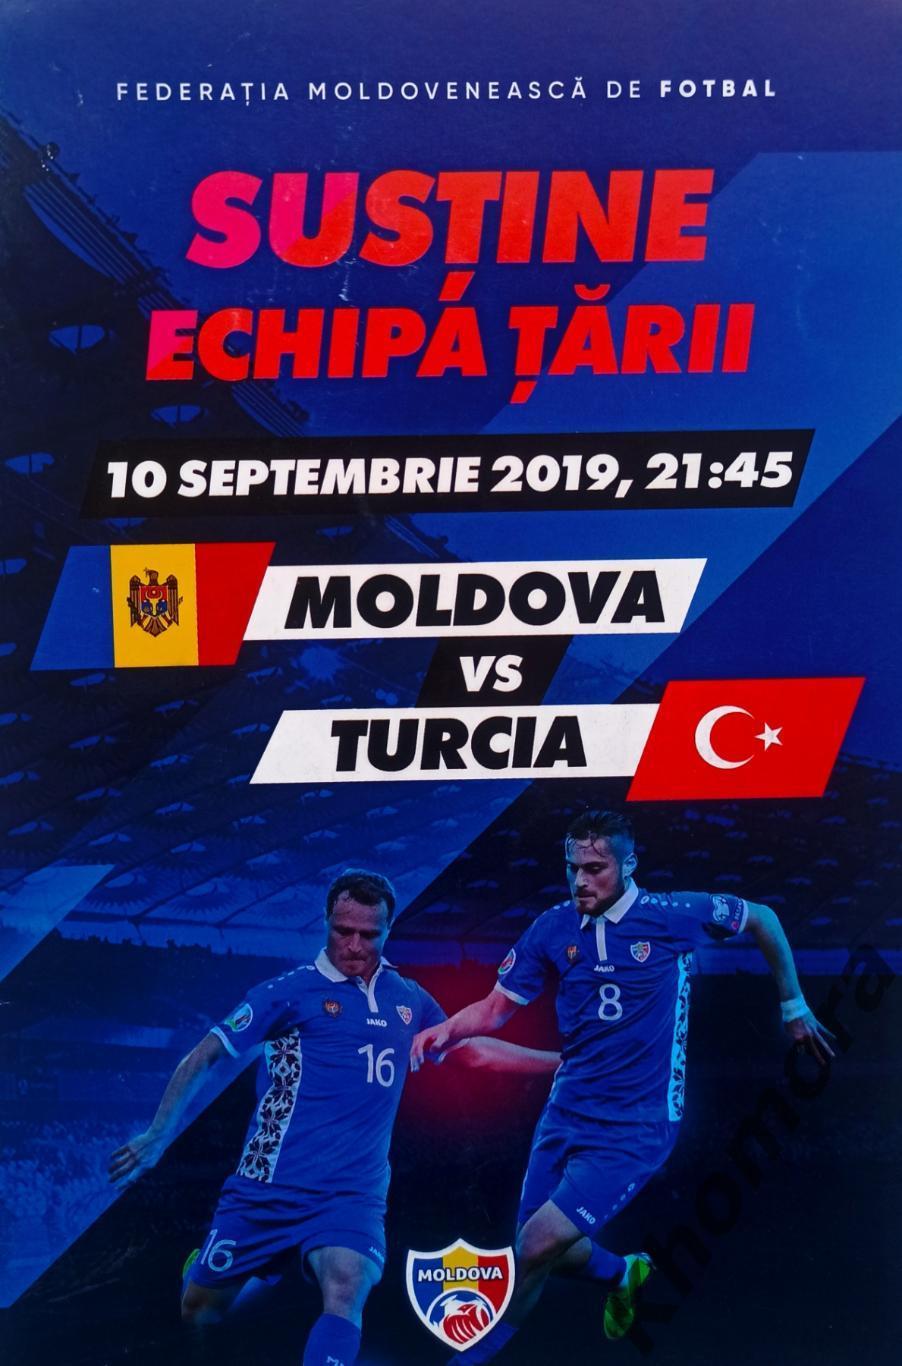 Молдова - Турция 10.09.2019 - официальная программа